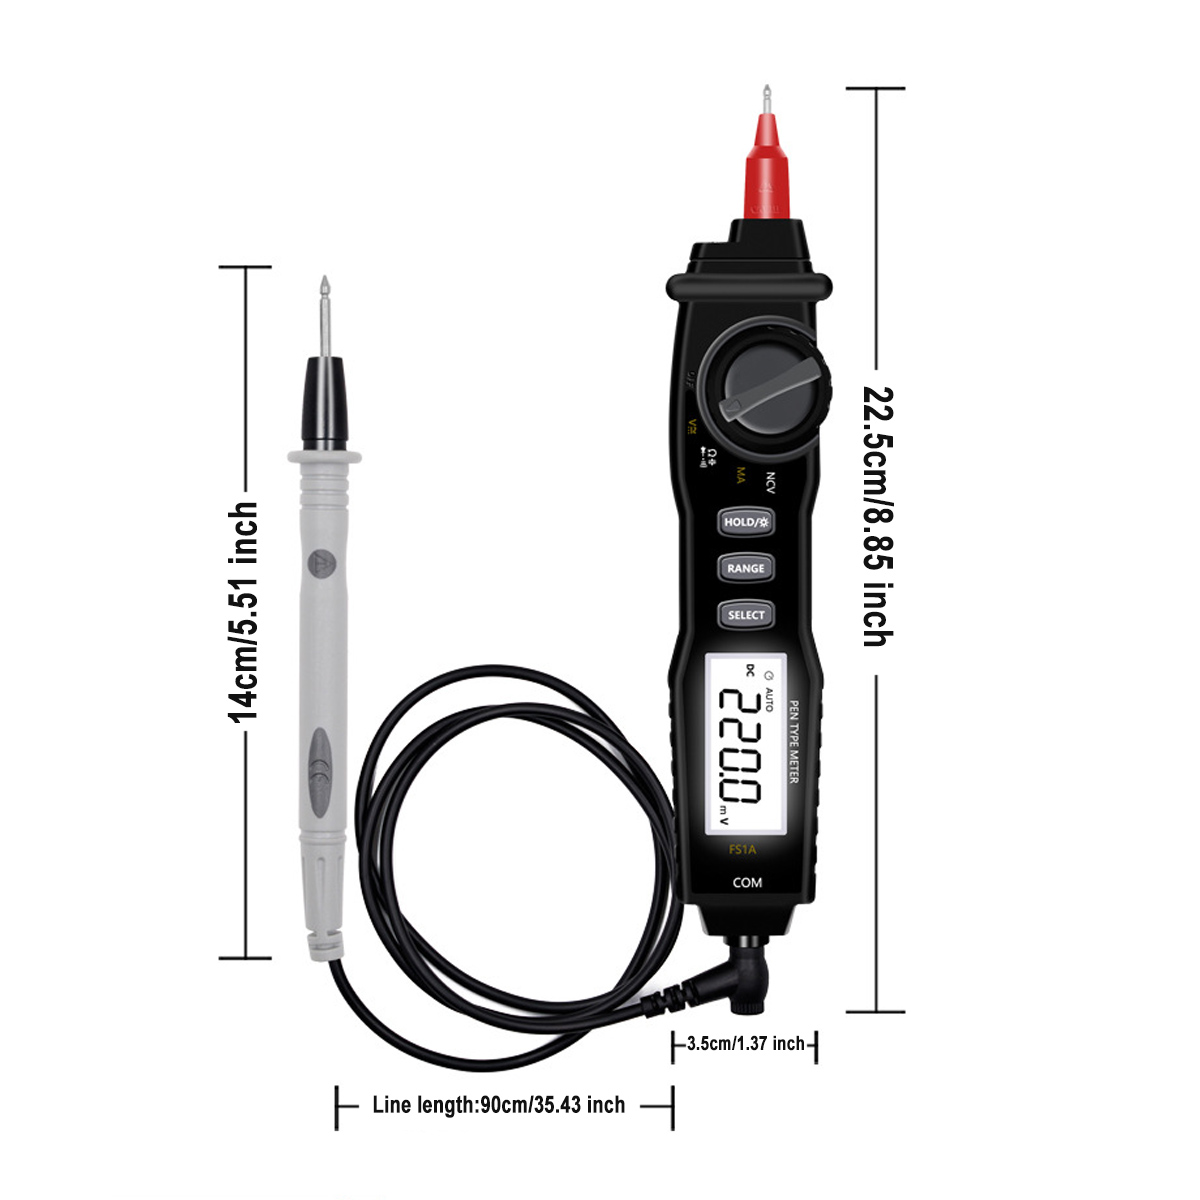 FS1A-Digital-Multimeter-Pen-Type-Professional-DC-Voltage-Meter-Handheld-Resistance-Diode-Tester-1731400